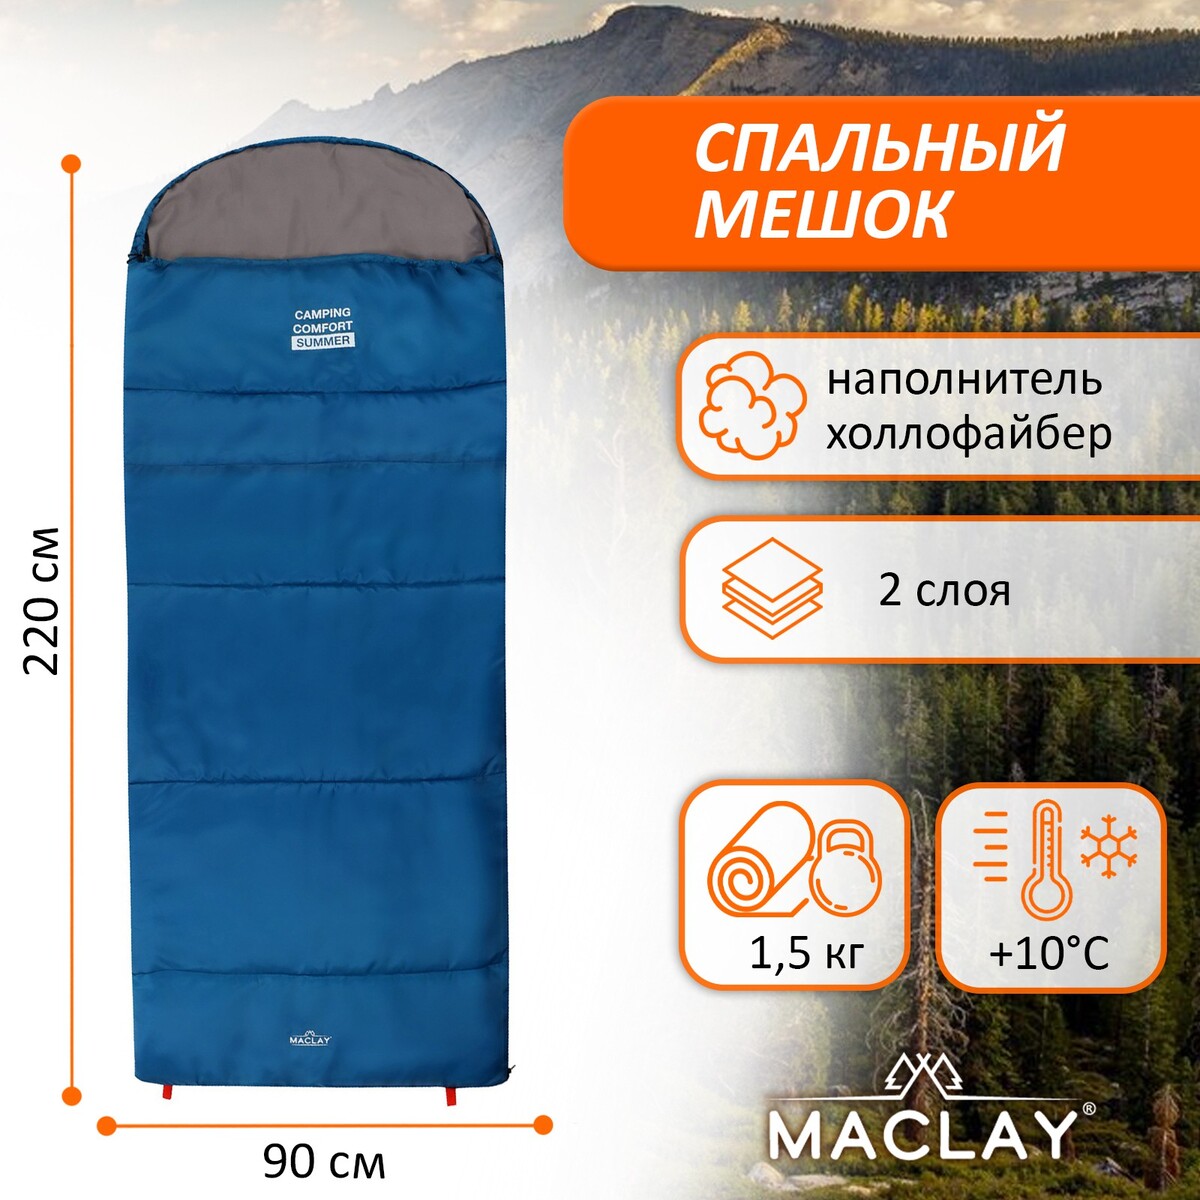 Спальный мешок maclay camping comfort summer, 2 слоя, правый, с подголовником, 220х90 см, +10/+25°с summer men